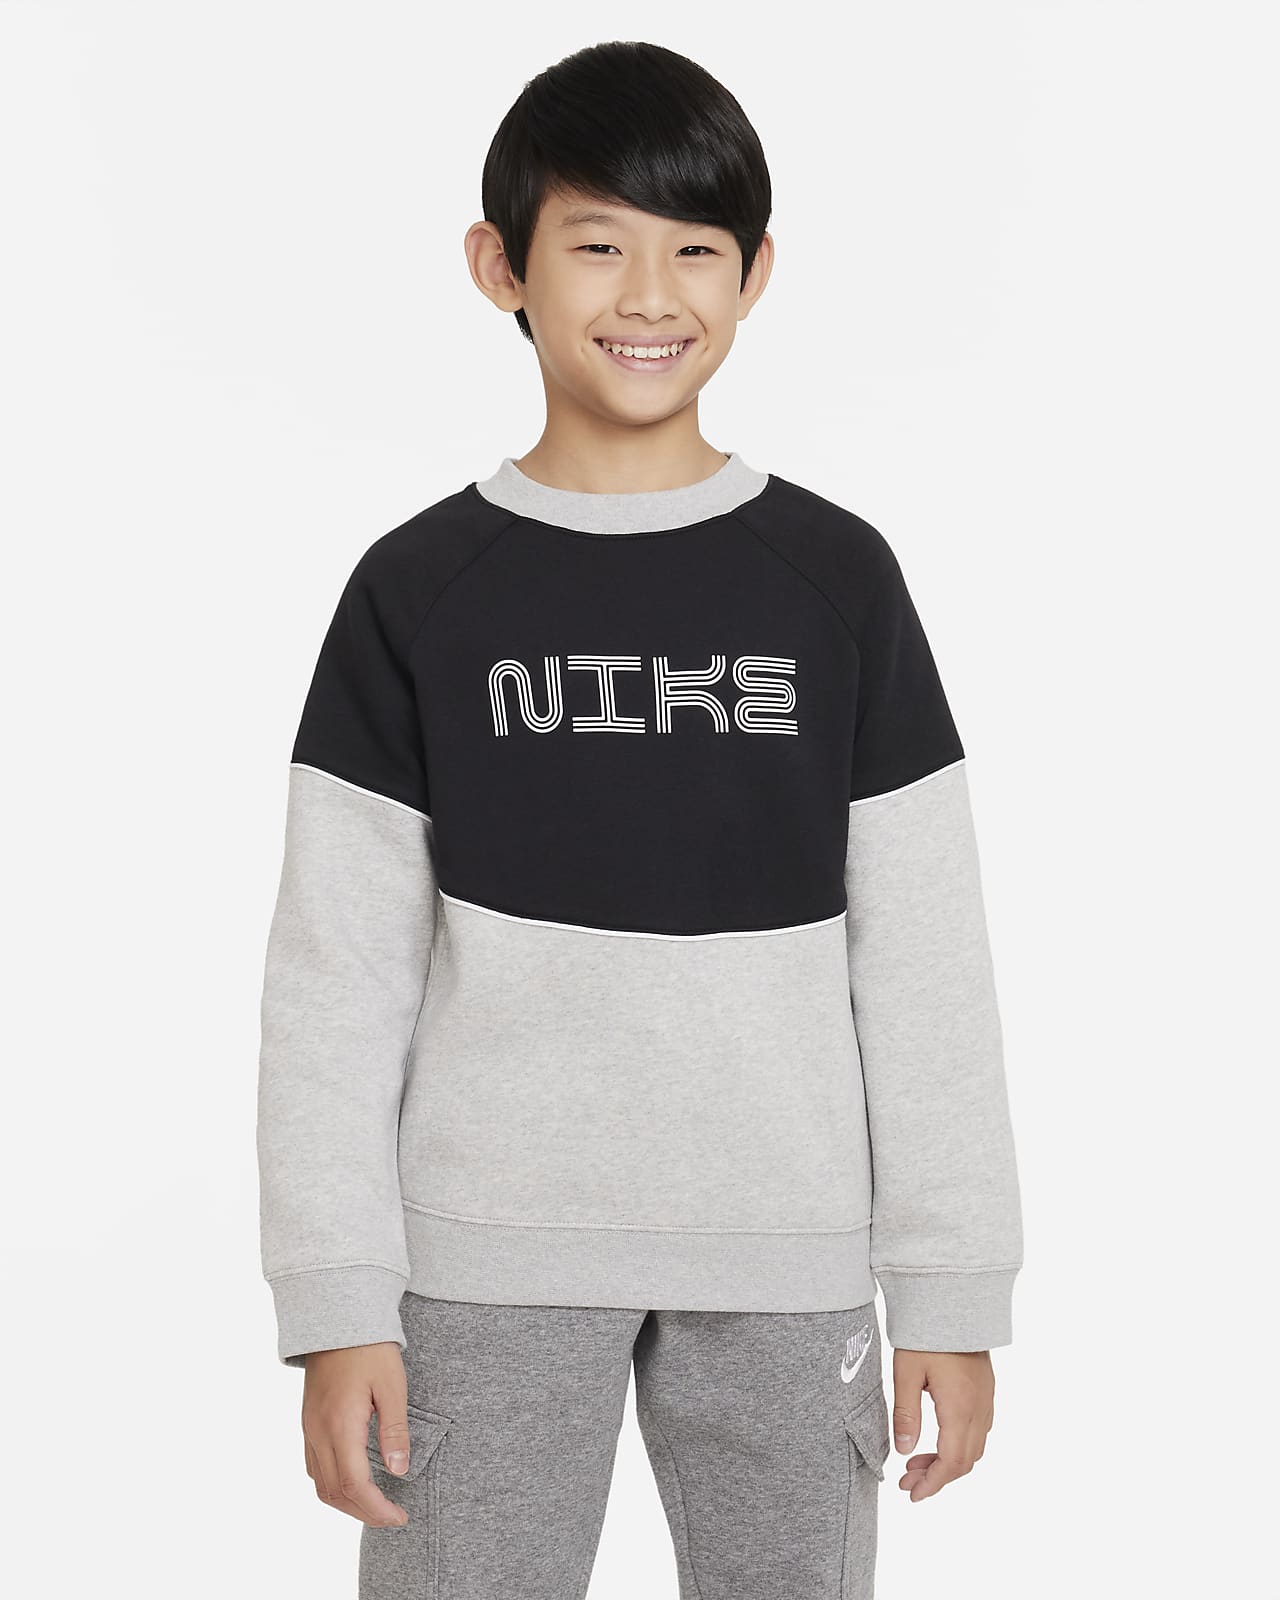 Nike Sportswear Older Kids' (Boys') Fleece Sweatshirt